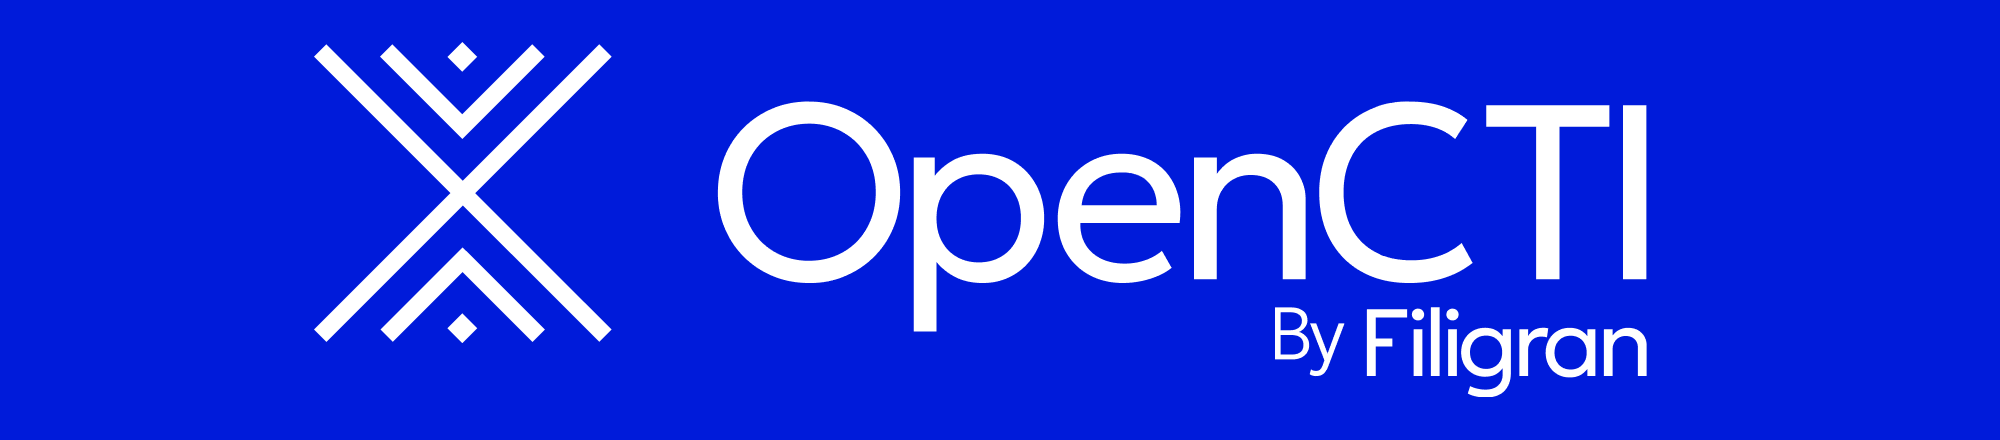 OpenCTI